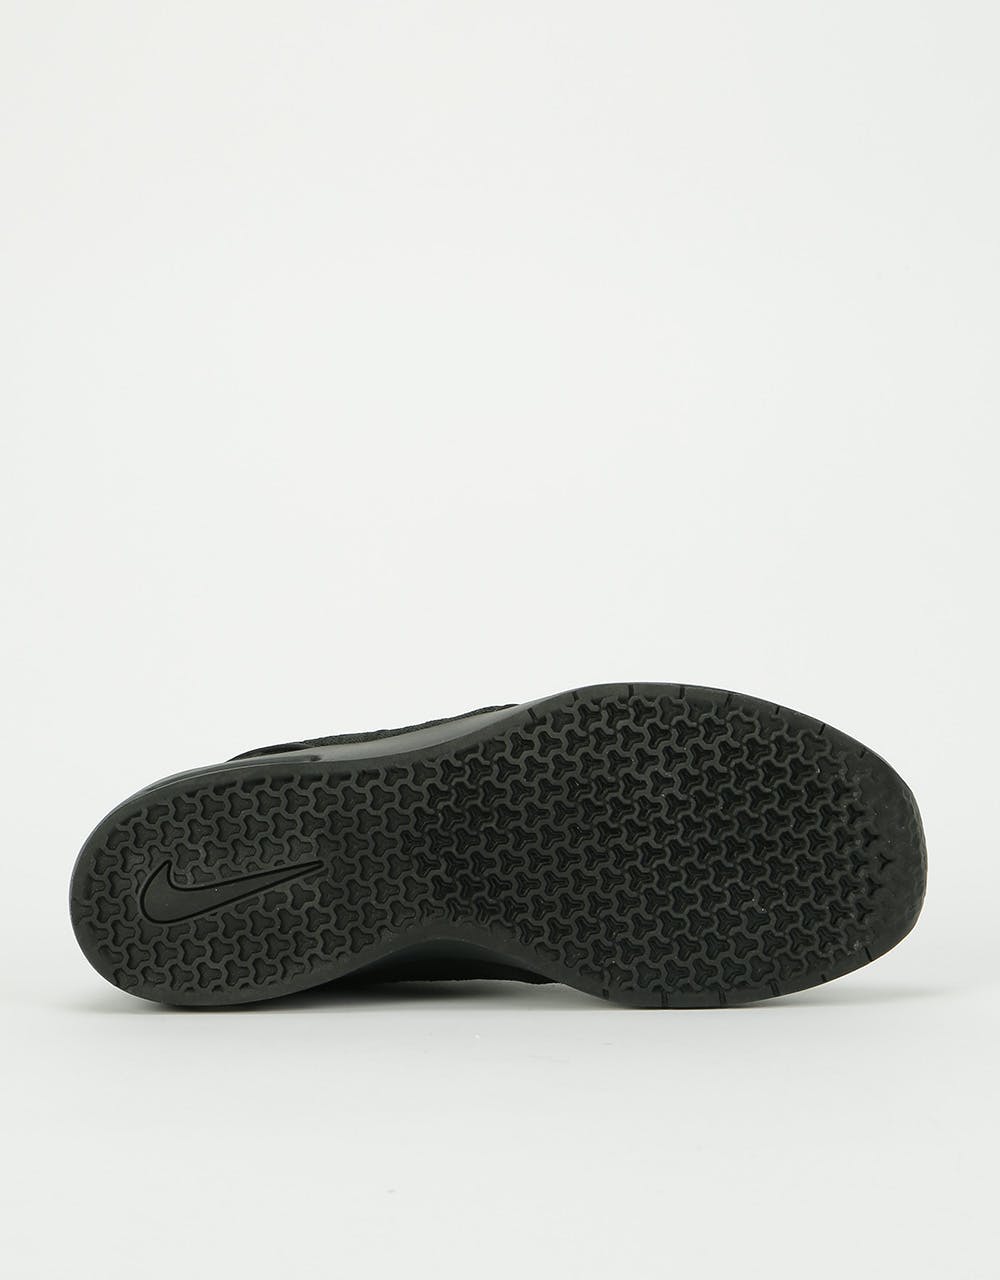 Nike SB Air Max Janoski 2 Shoes - Black/Black-Black-Black